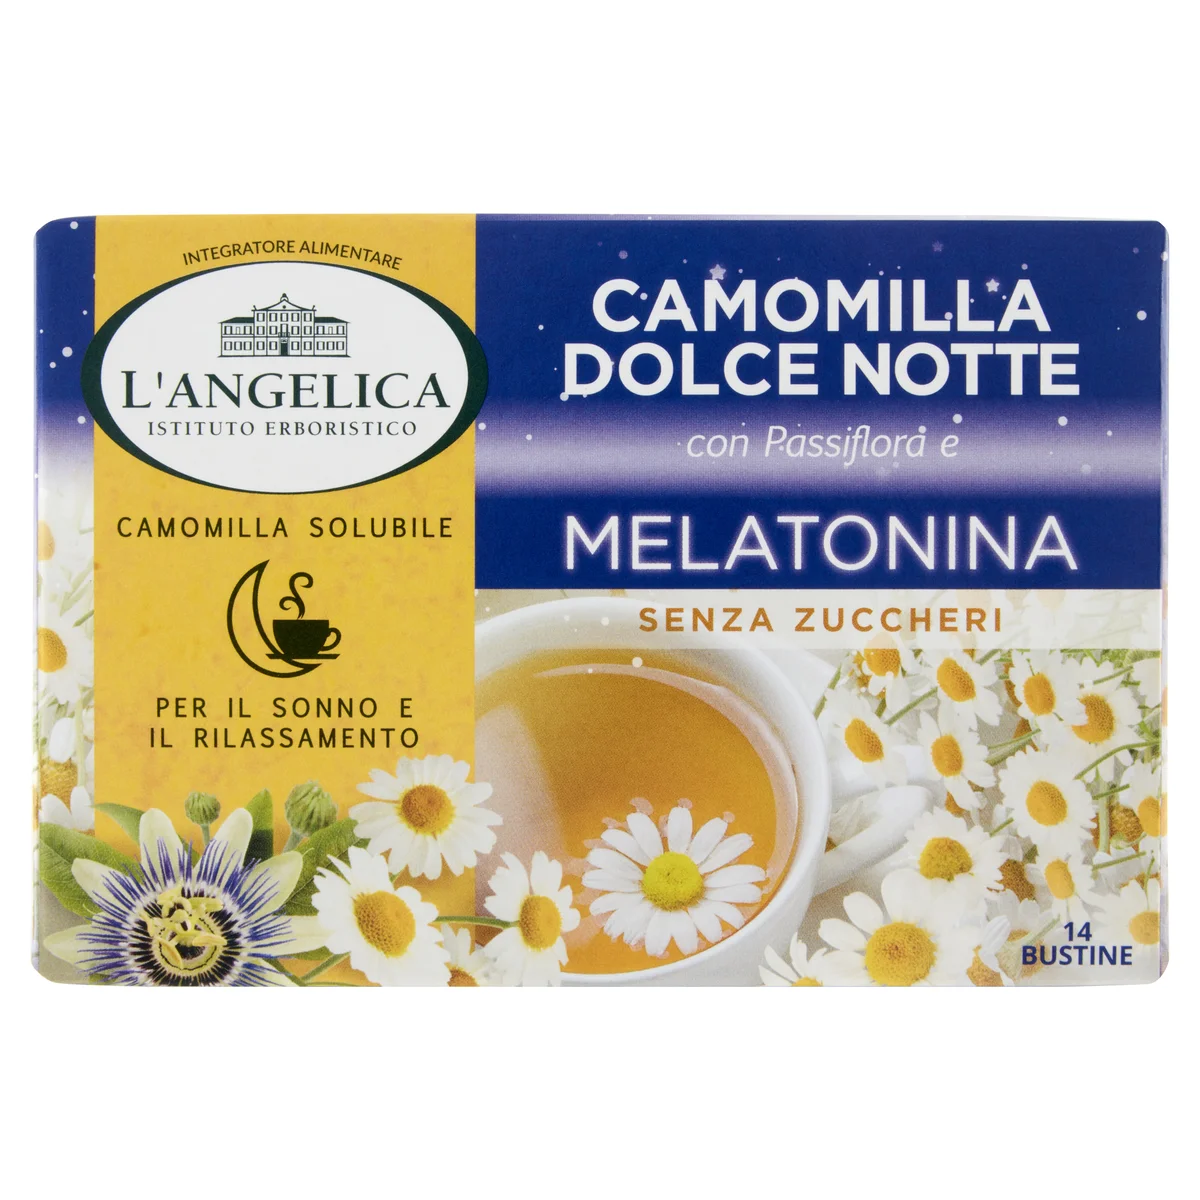 L'Angelica Camomilla Solubile Dolce Notte con Passiflora e Melatonina 14  Bustine 61,6 g